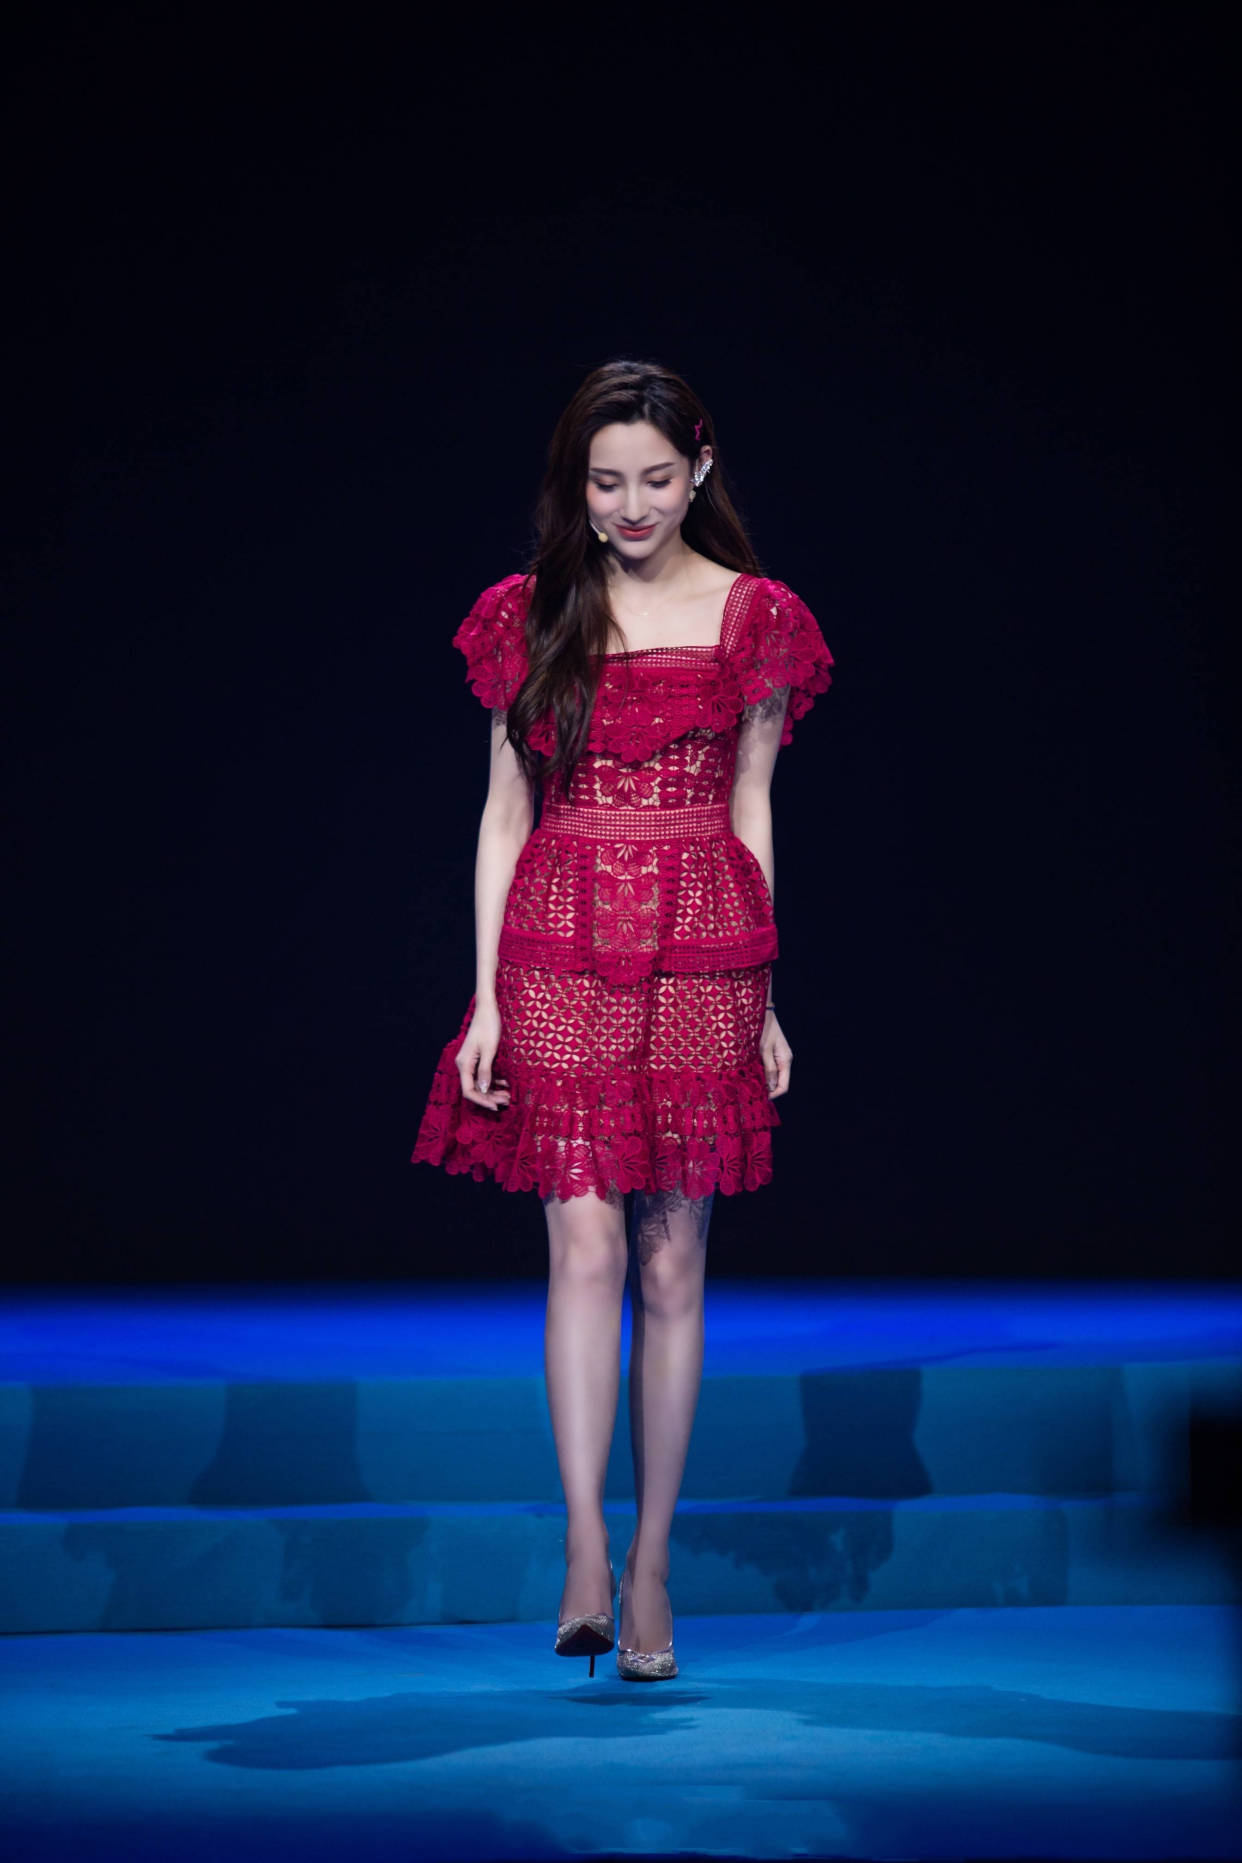 原创央视美女马凡舒,身着复古蕾丝红裙真惊艳,颜值身材堪比女团门面